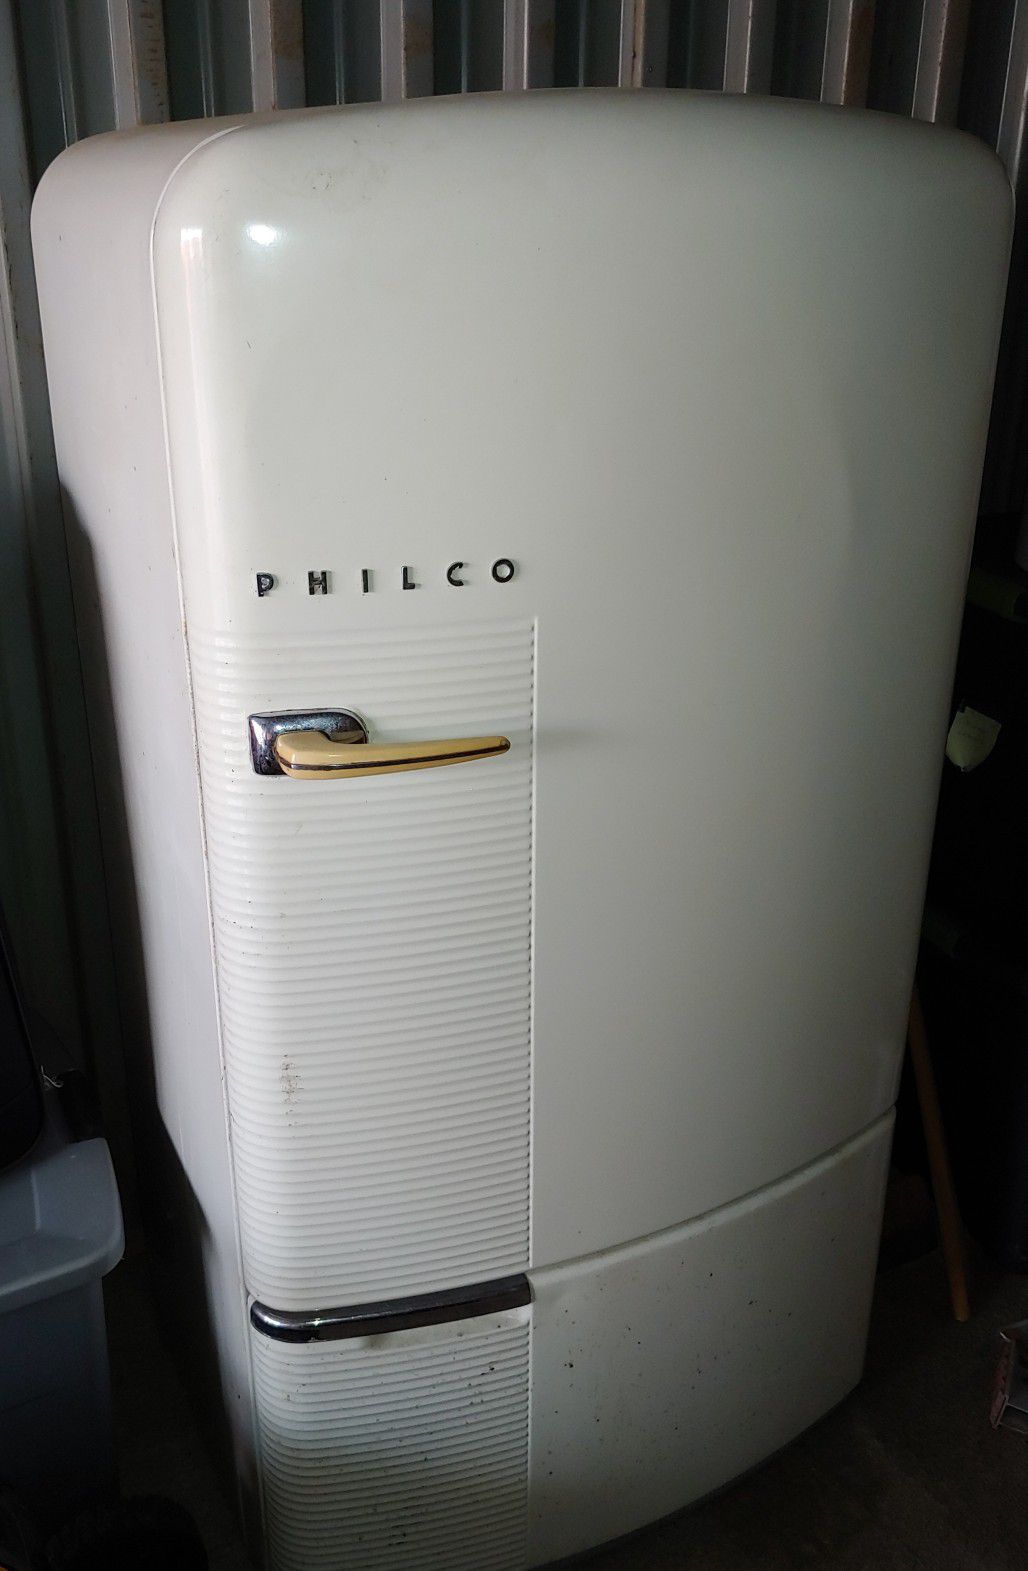 Philco antique refrigerator